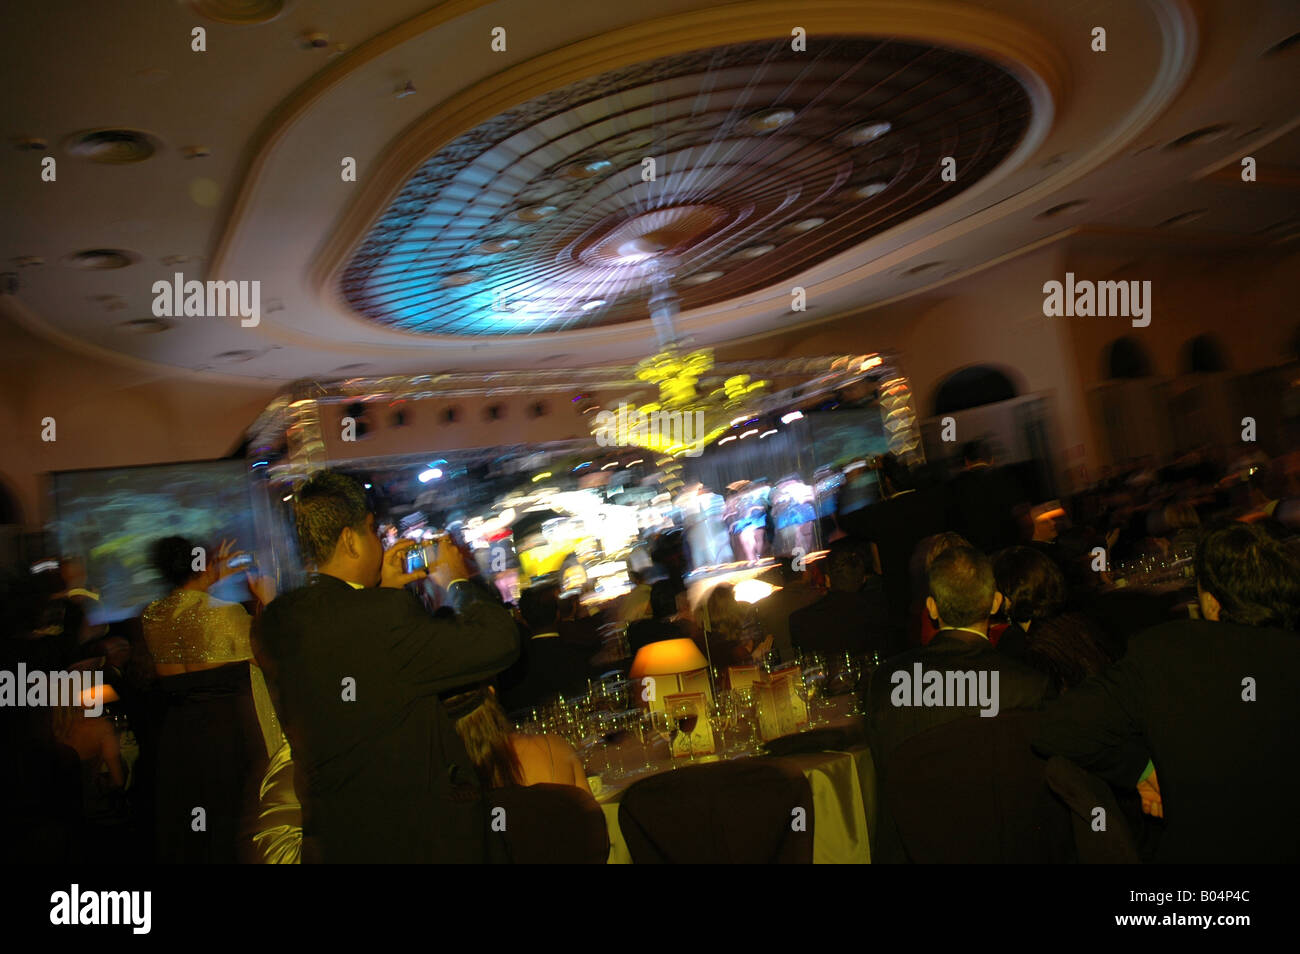 Feier party celebration Farbblitz colorflash Bewegungsunschärfe blurred motion Bühne stage arena Stock Photo